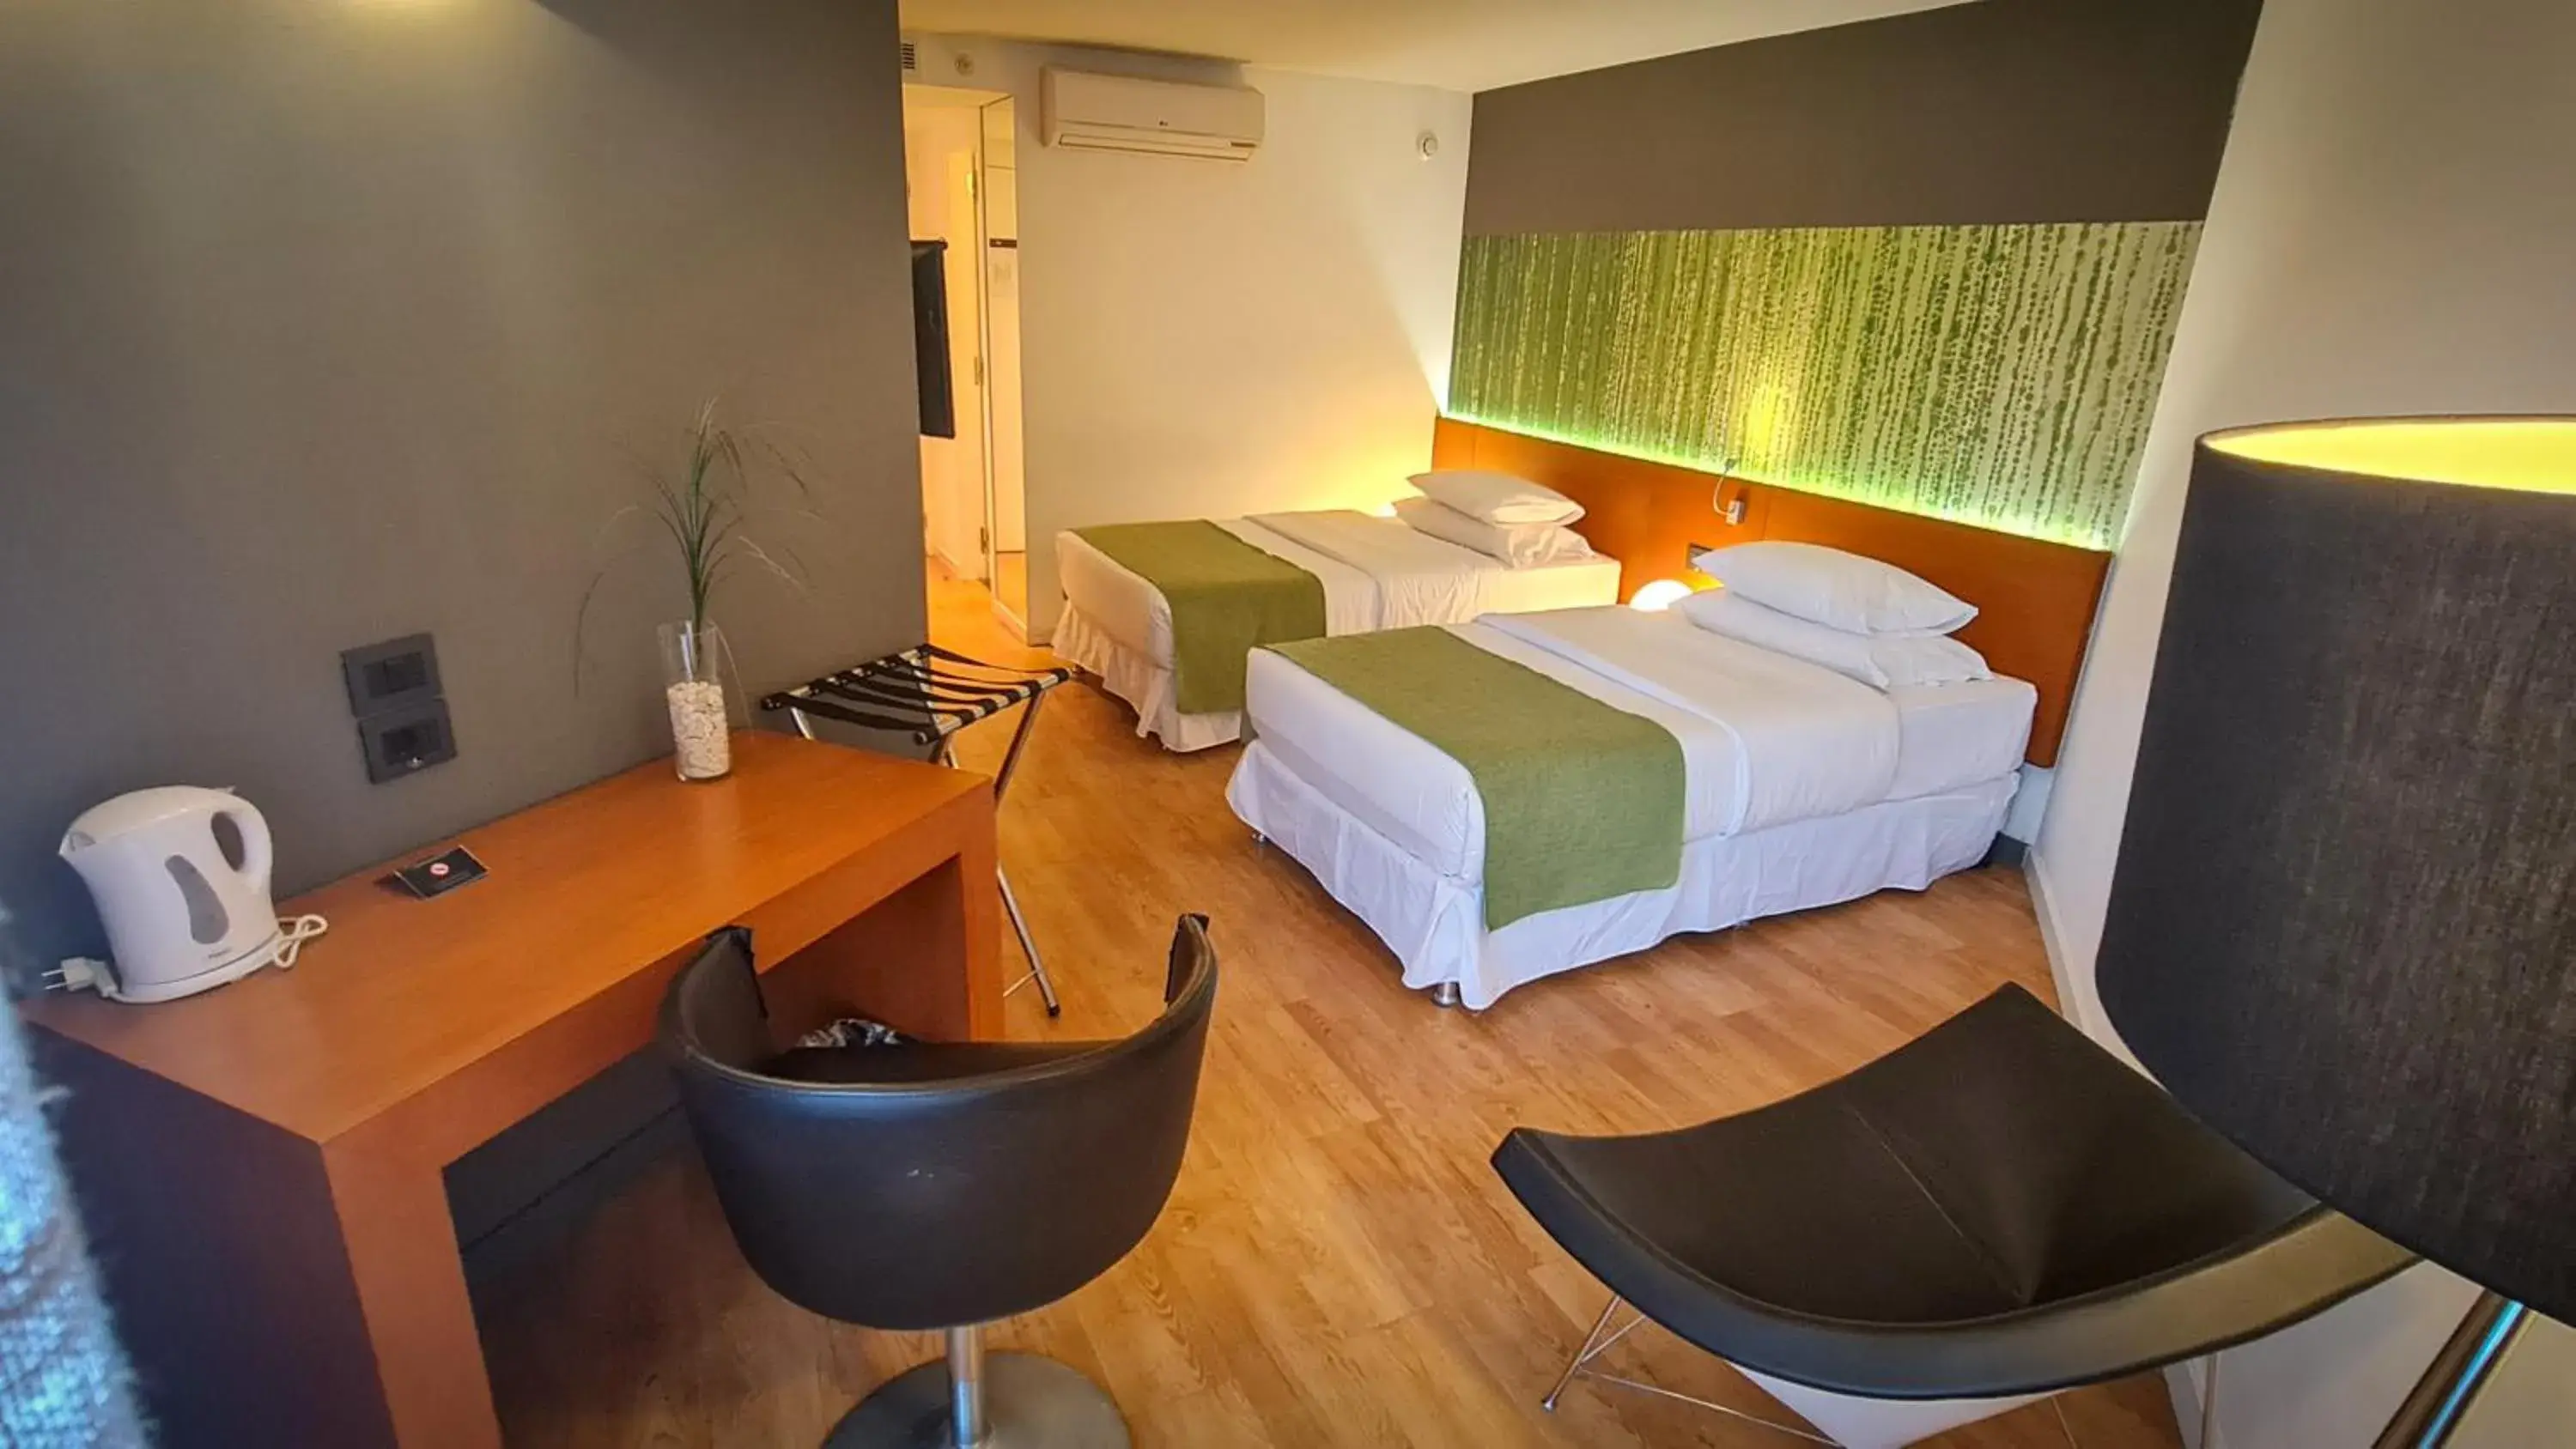 Bedroom, Bed in BIT Design Hotel